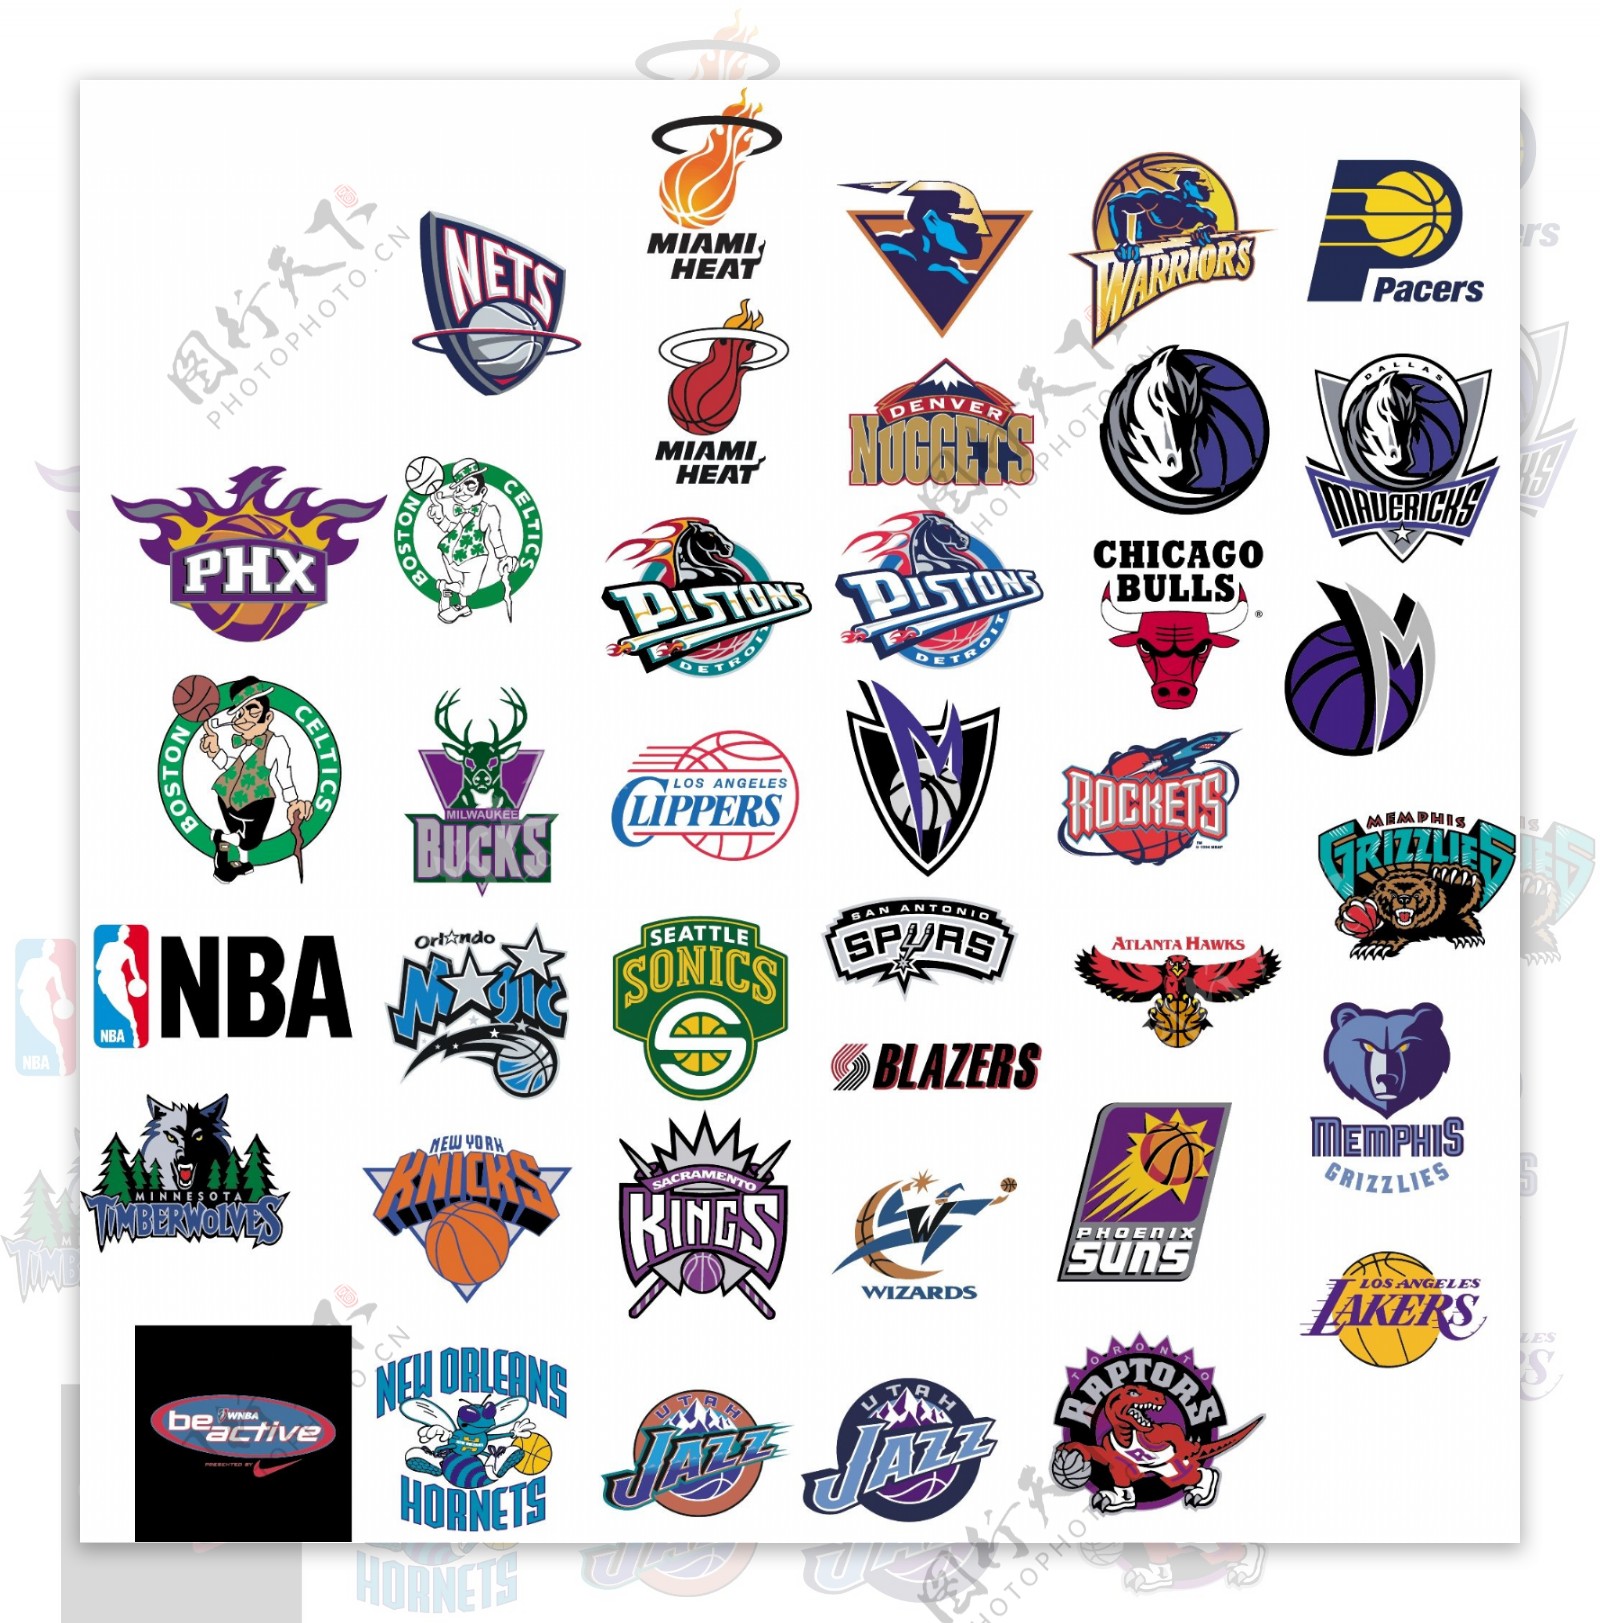 美国NBA篮球队徽标志